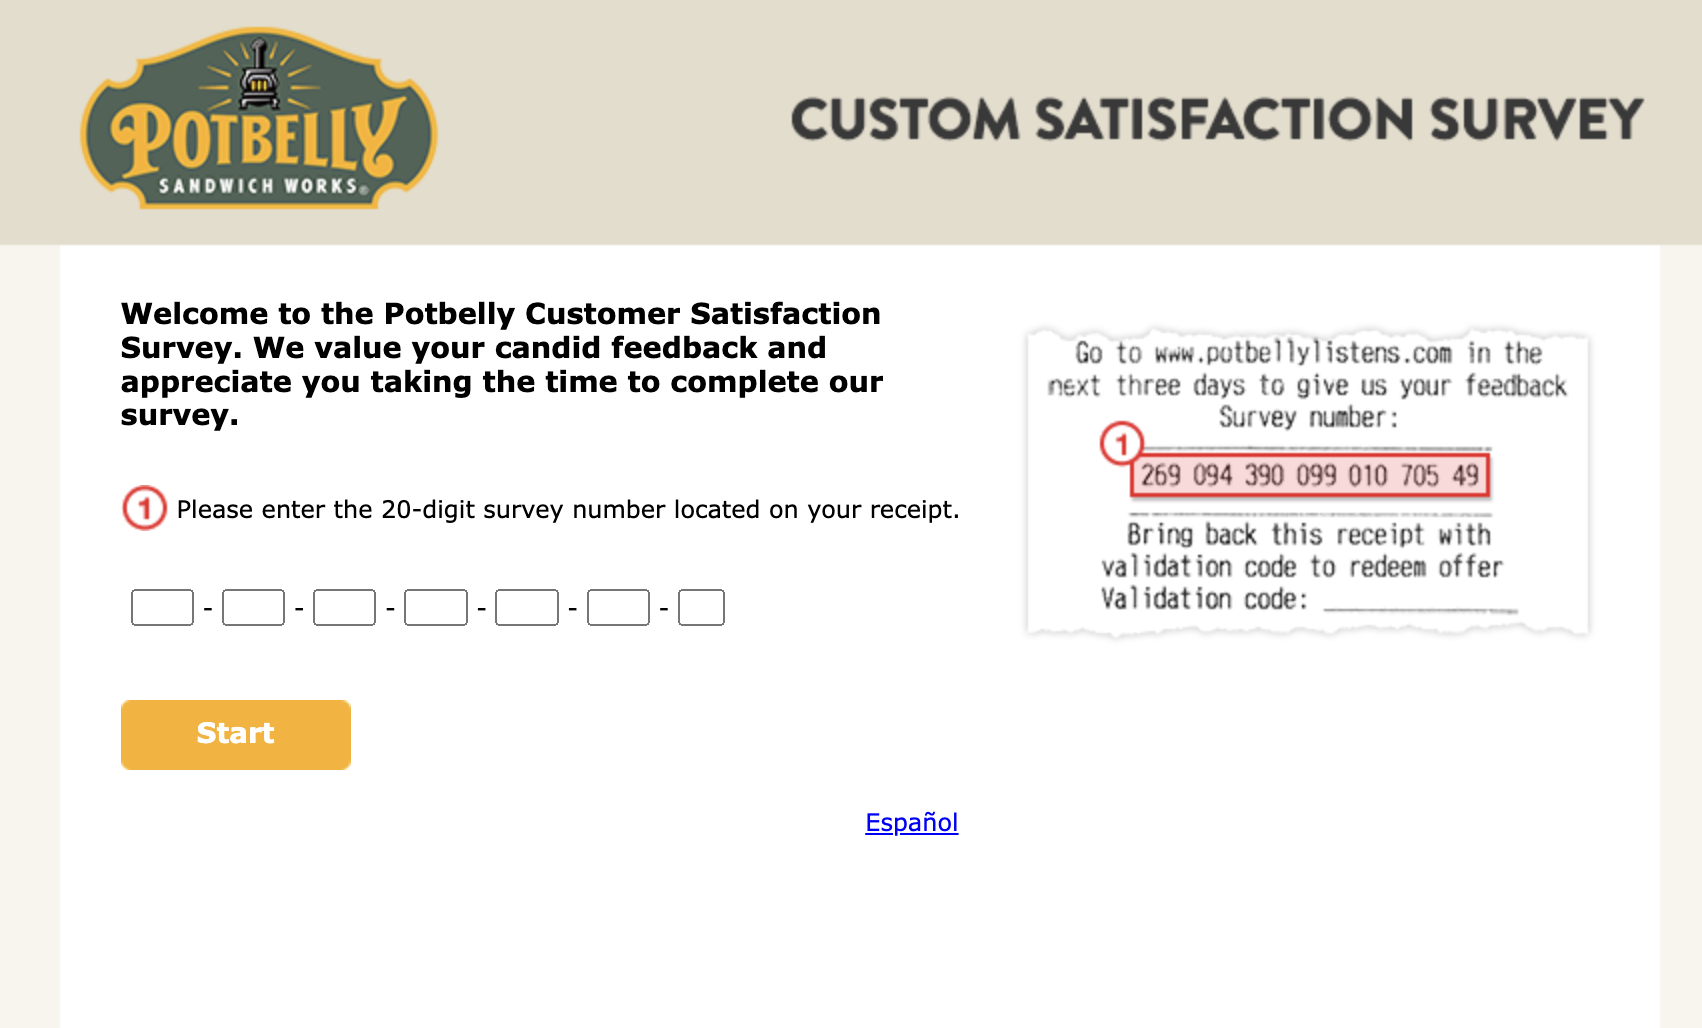 PotbellyListens is a customer feedback survey